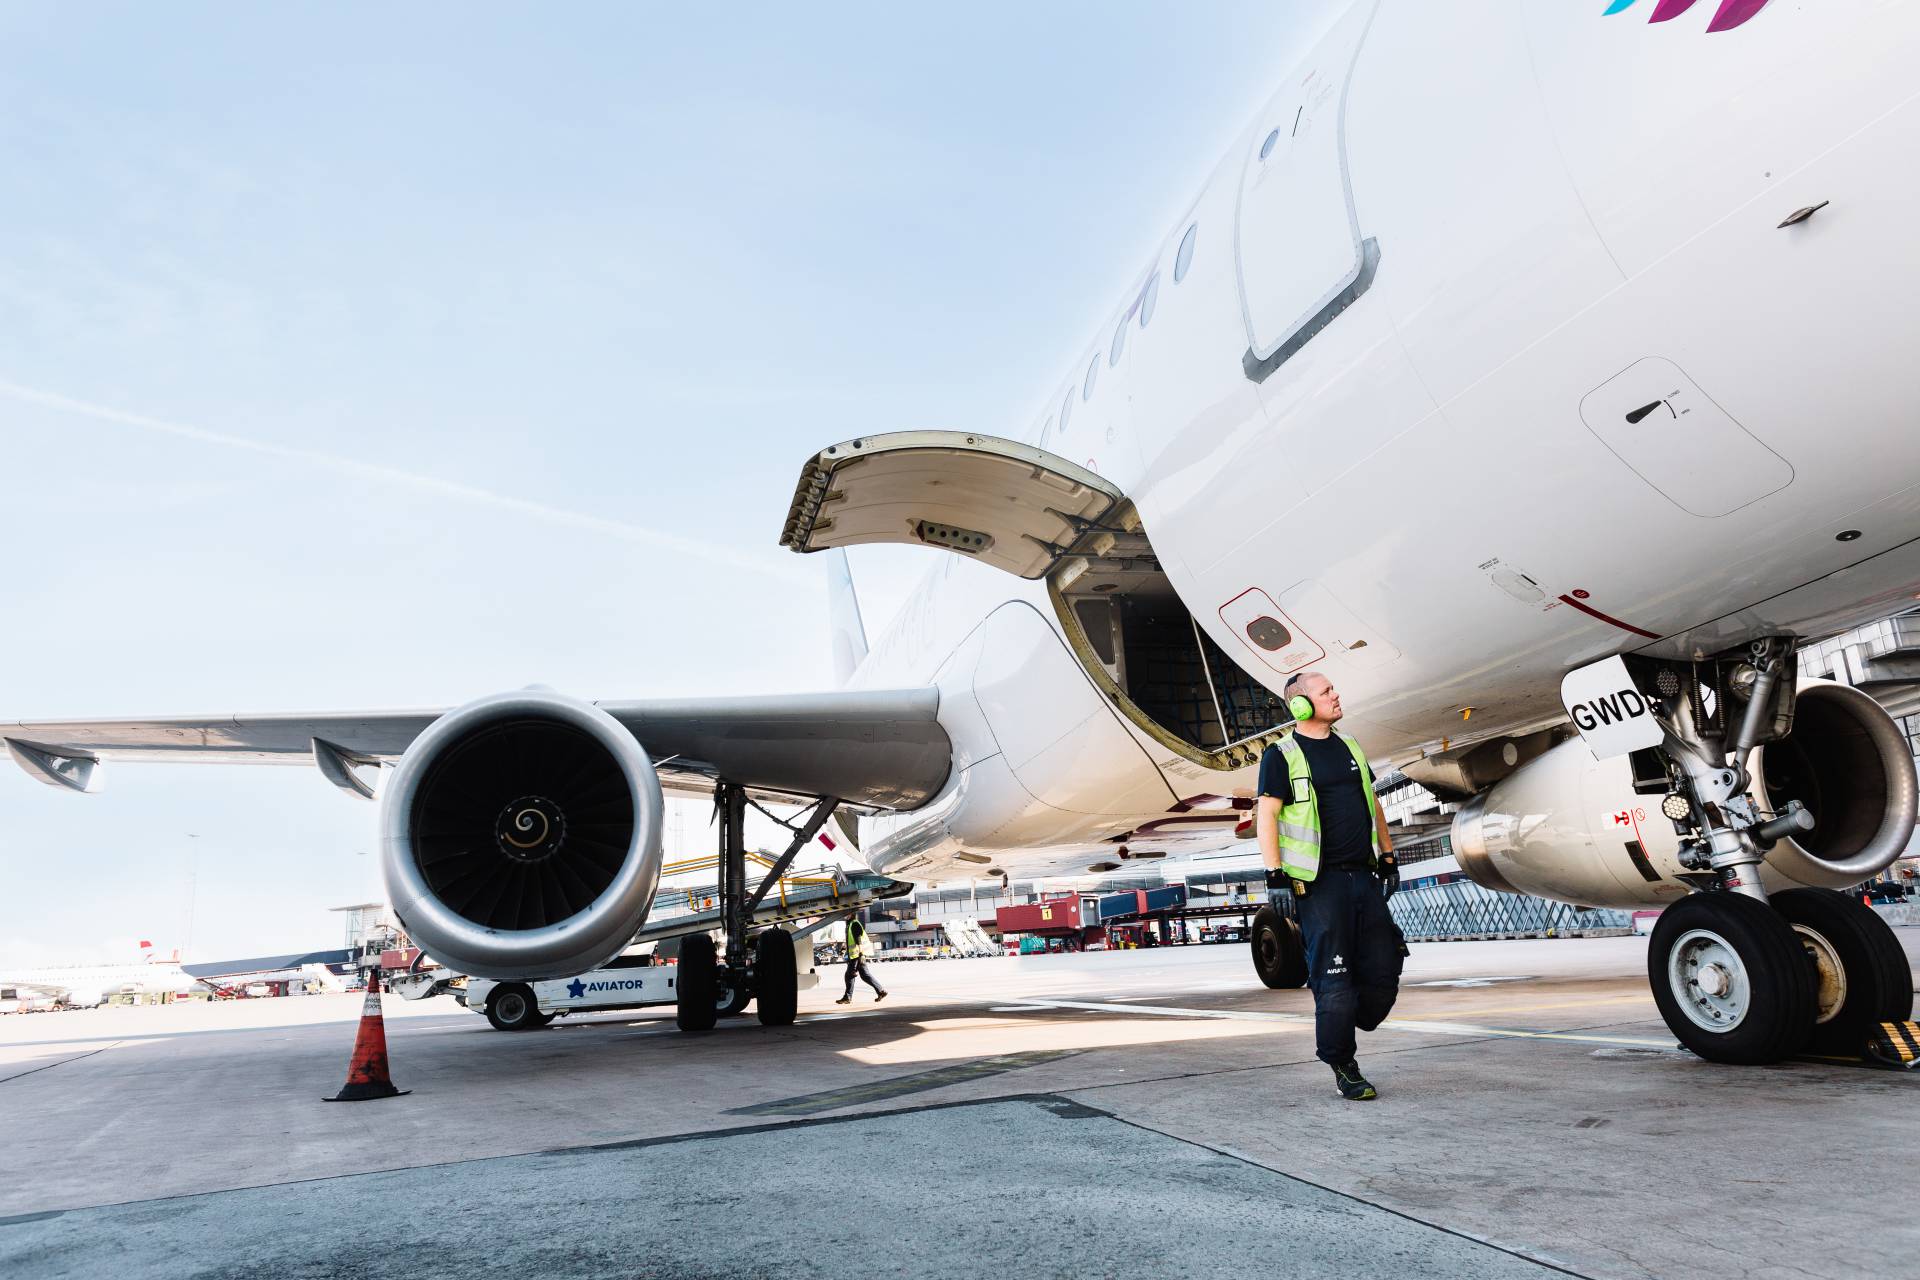 وكيل المناولة Aviator يوسع شراكته مع Finnair لمدة 5 سنوات أخرى في مطار هلسنكي